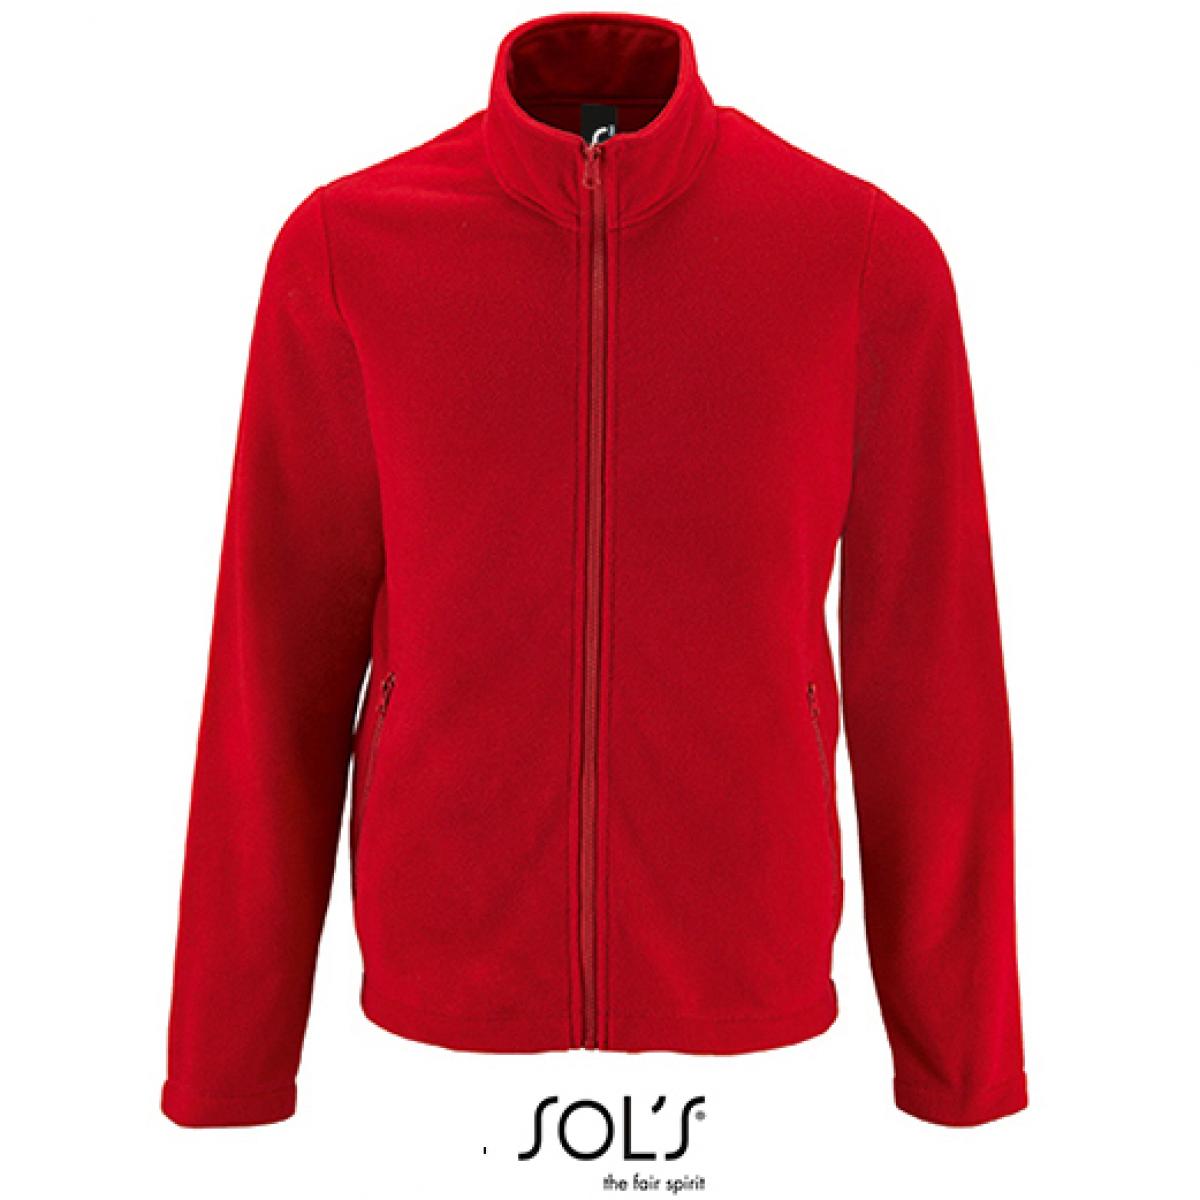 Hersteller: SOLs Herstellernummer: 02093 Artikelbezeichnung: Herren Plain Fleece Jacket Norman Farbe: Red